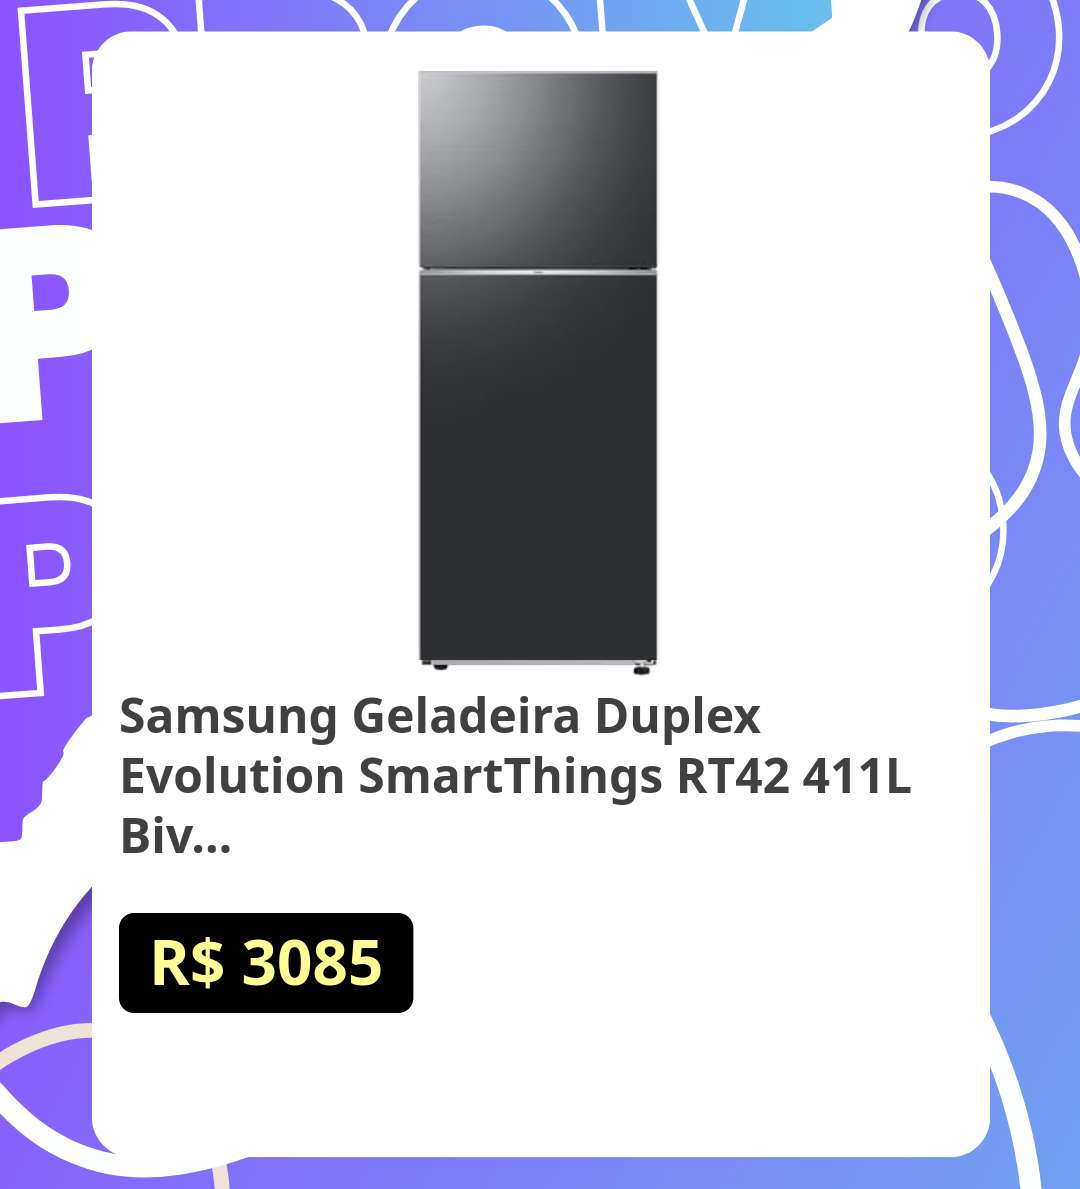 Samsung Geladeira Duplex Evolution SmartThings RT42 411L Bivolt Black Inox

🔥🔥   por R$ 3085 

Destaque o cupom de 10% abaixo do preço

🛒 COMPRE AQUI: amzn.to/3UsZhJ2

_*Promoção sujeita a alteração a qualquer momento_